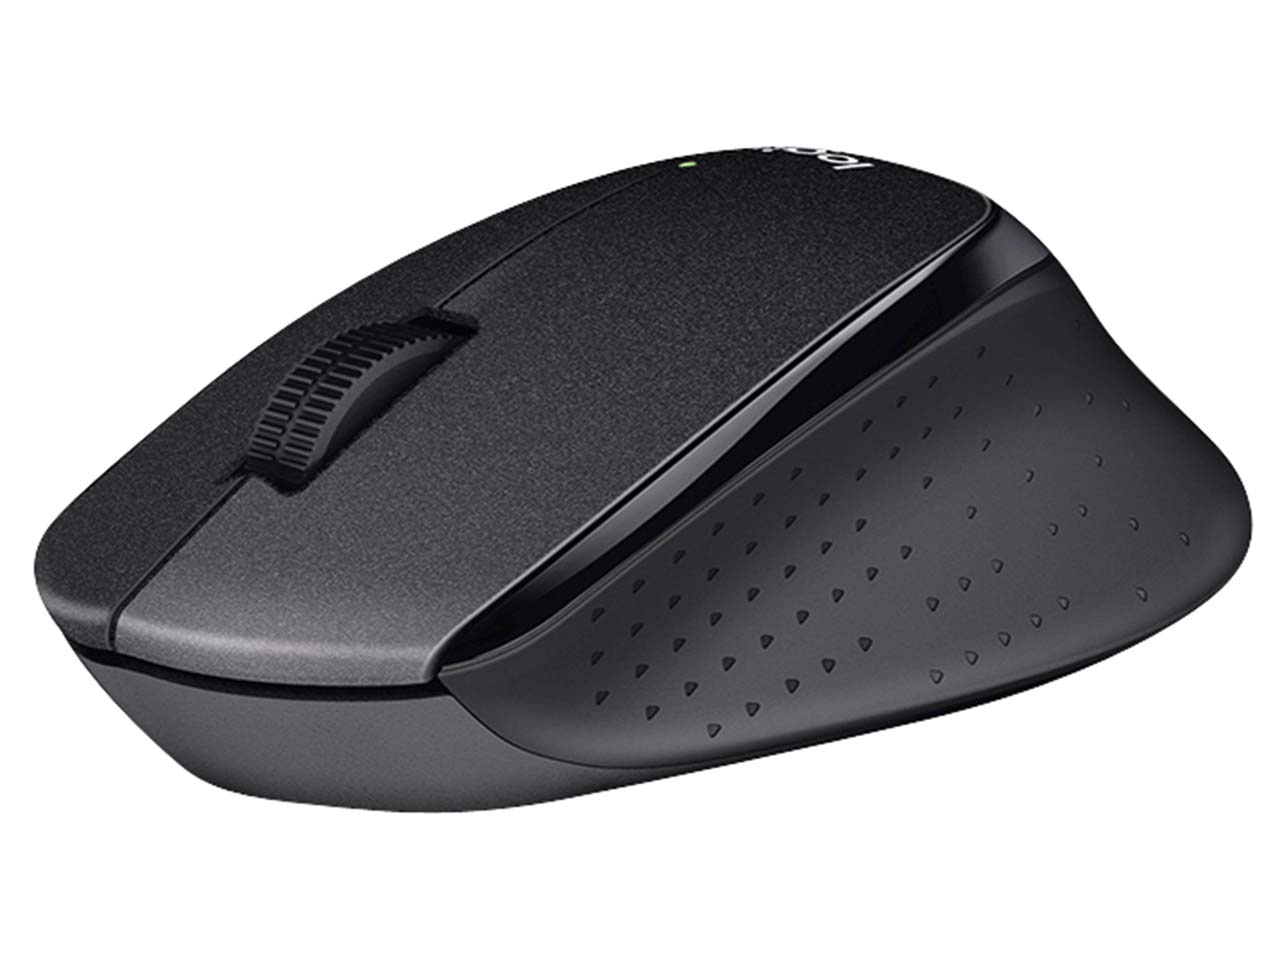 Беспроводная мышь m280. Мышь Logitech m330 Silent Plus. Мышь беспроводная Logitech m280 Black (910-004287). Logitech Silent Plus m330. Logitech Wireless Mouse m280.